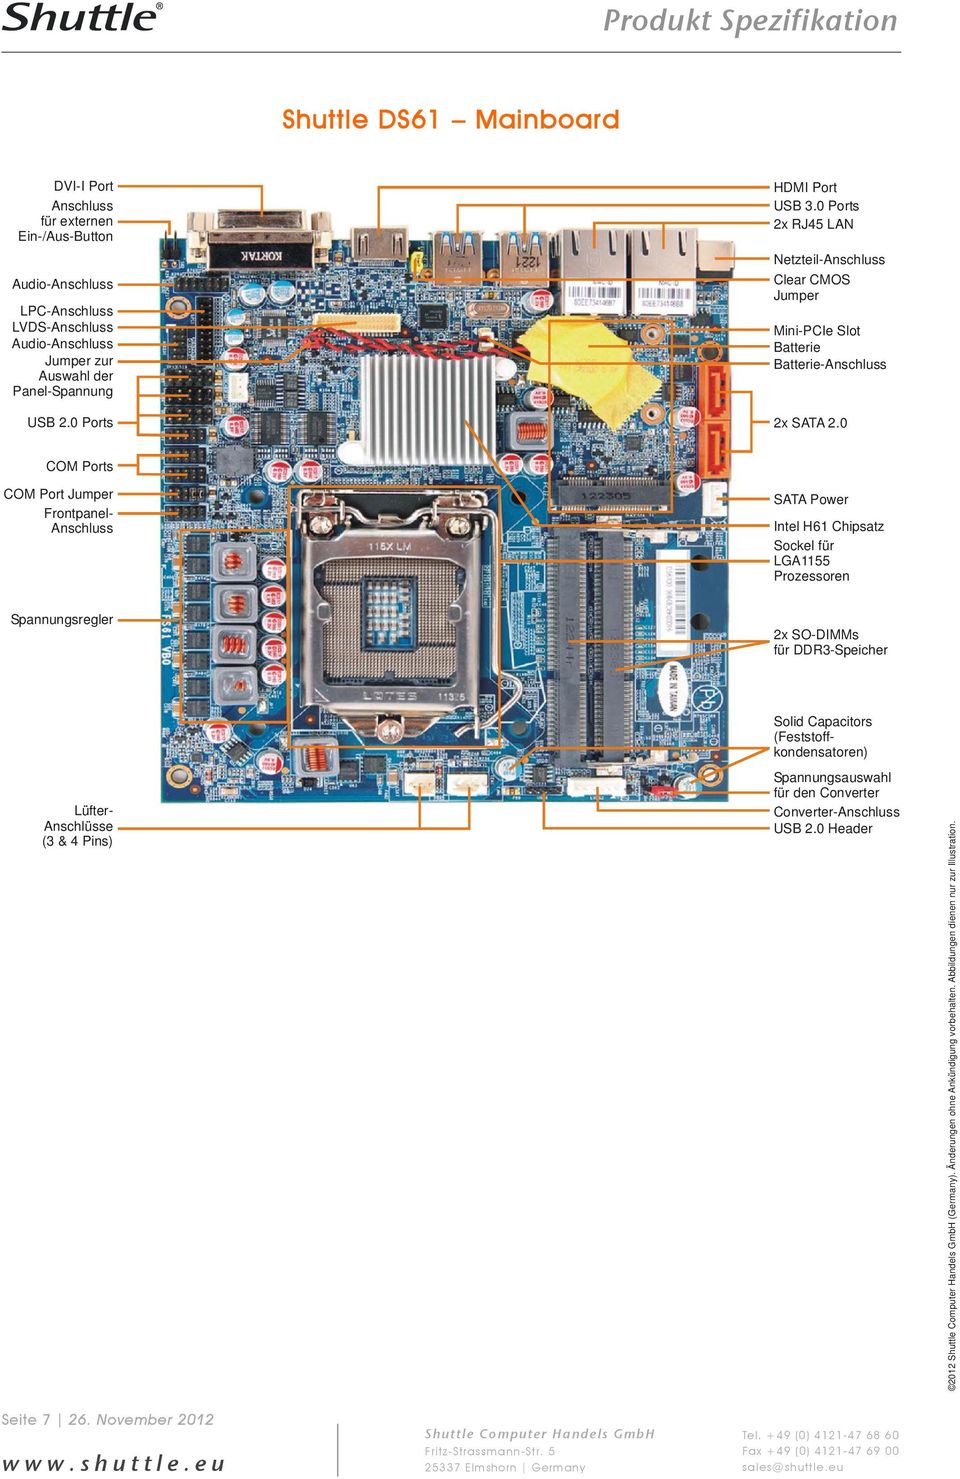 0 COM Ports COM Port Jumper Frontpanel- Anschluss SATA Power Intel H61 Chipsatz Sockel für LGA1155 Prozessoren Spannungsregler 2x SO-DIMMs für DDR3-Speicher